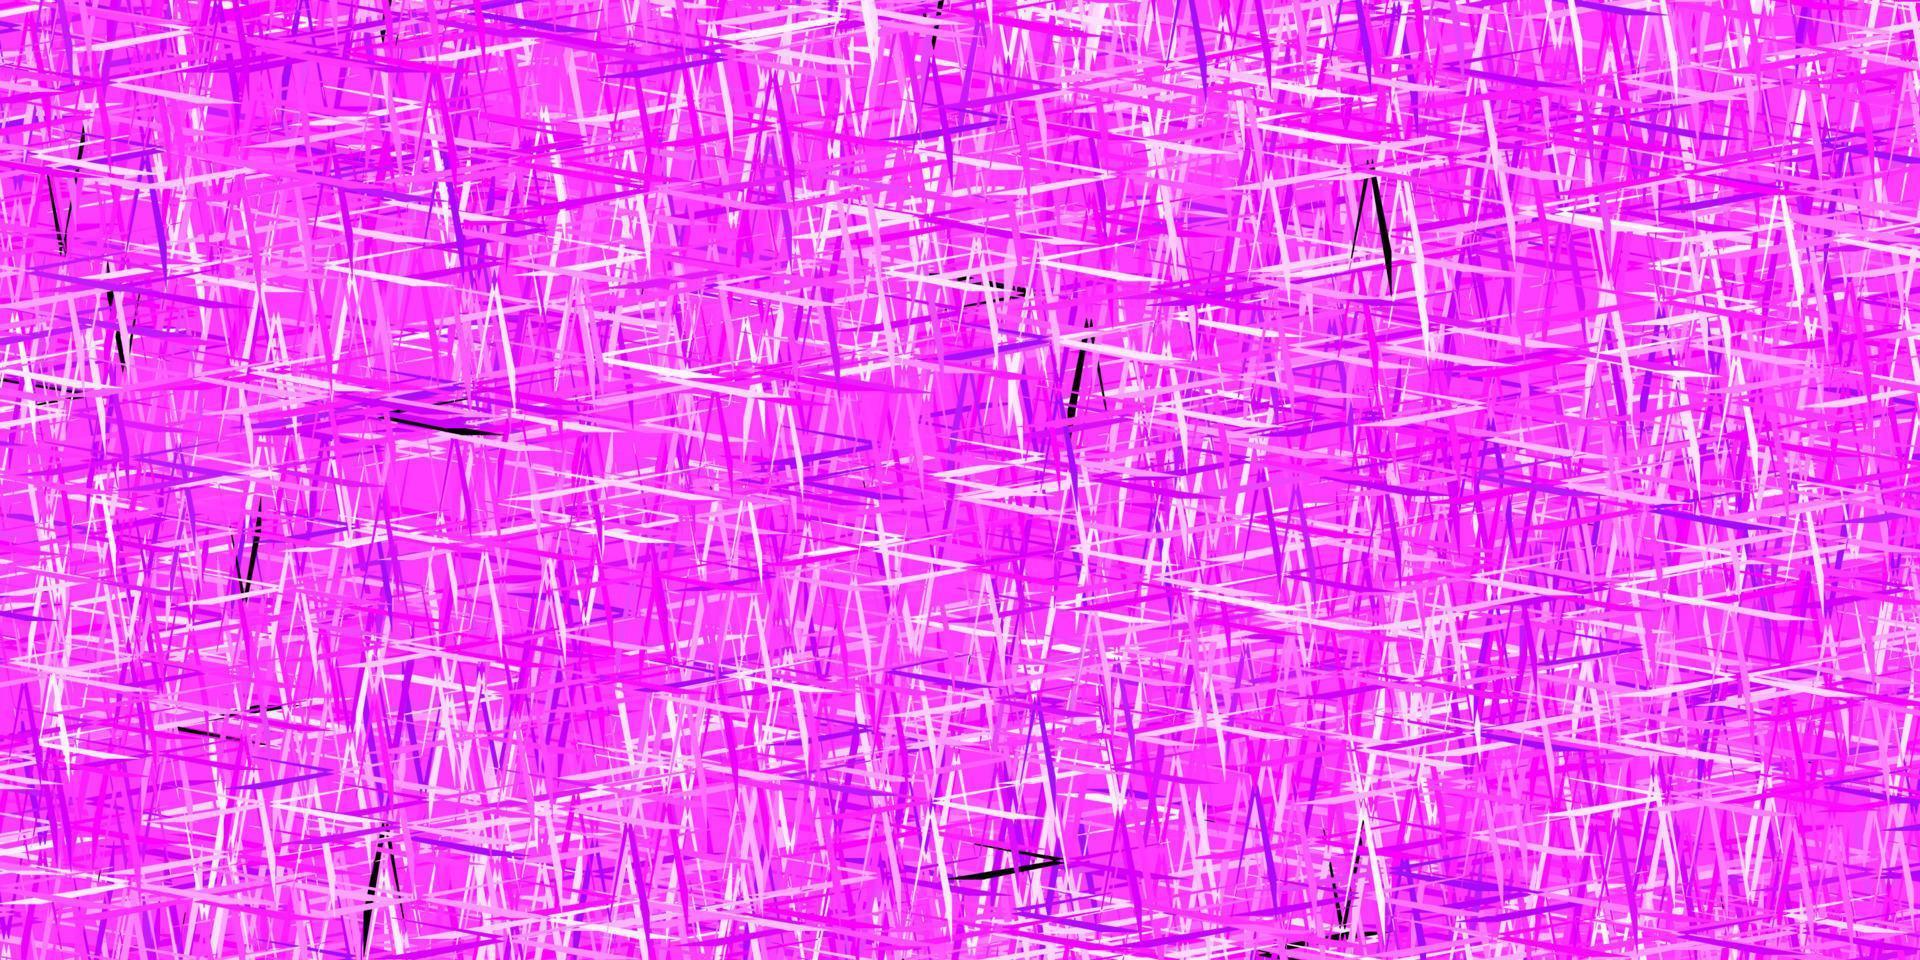 padrão de vetor roxo, rosa escuro com linhas afiadas.